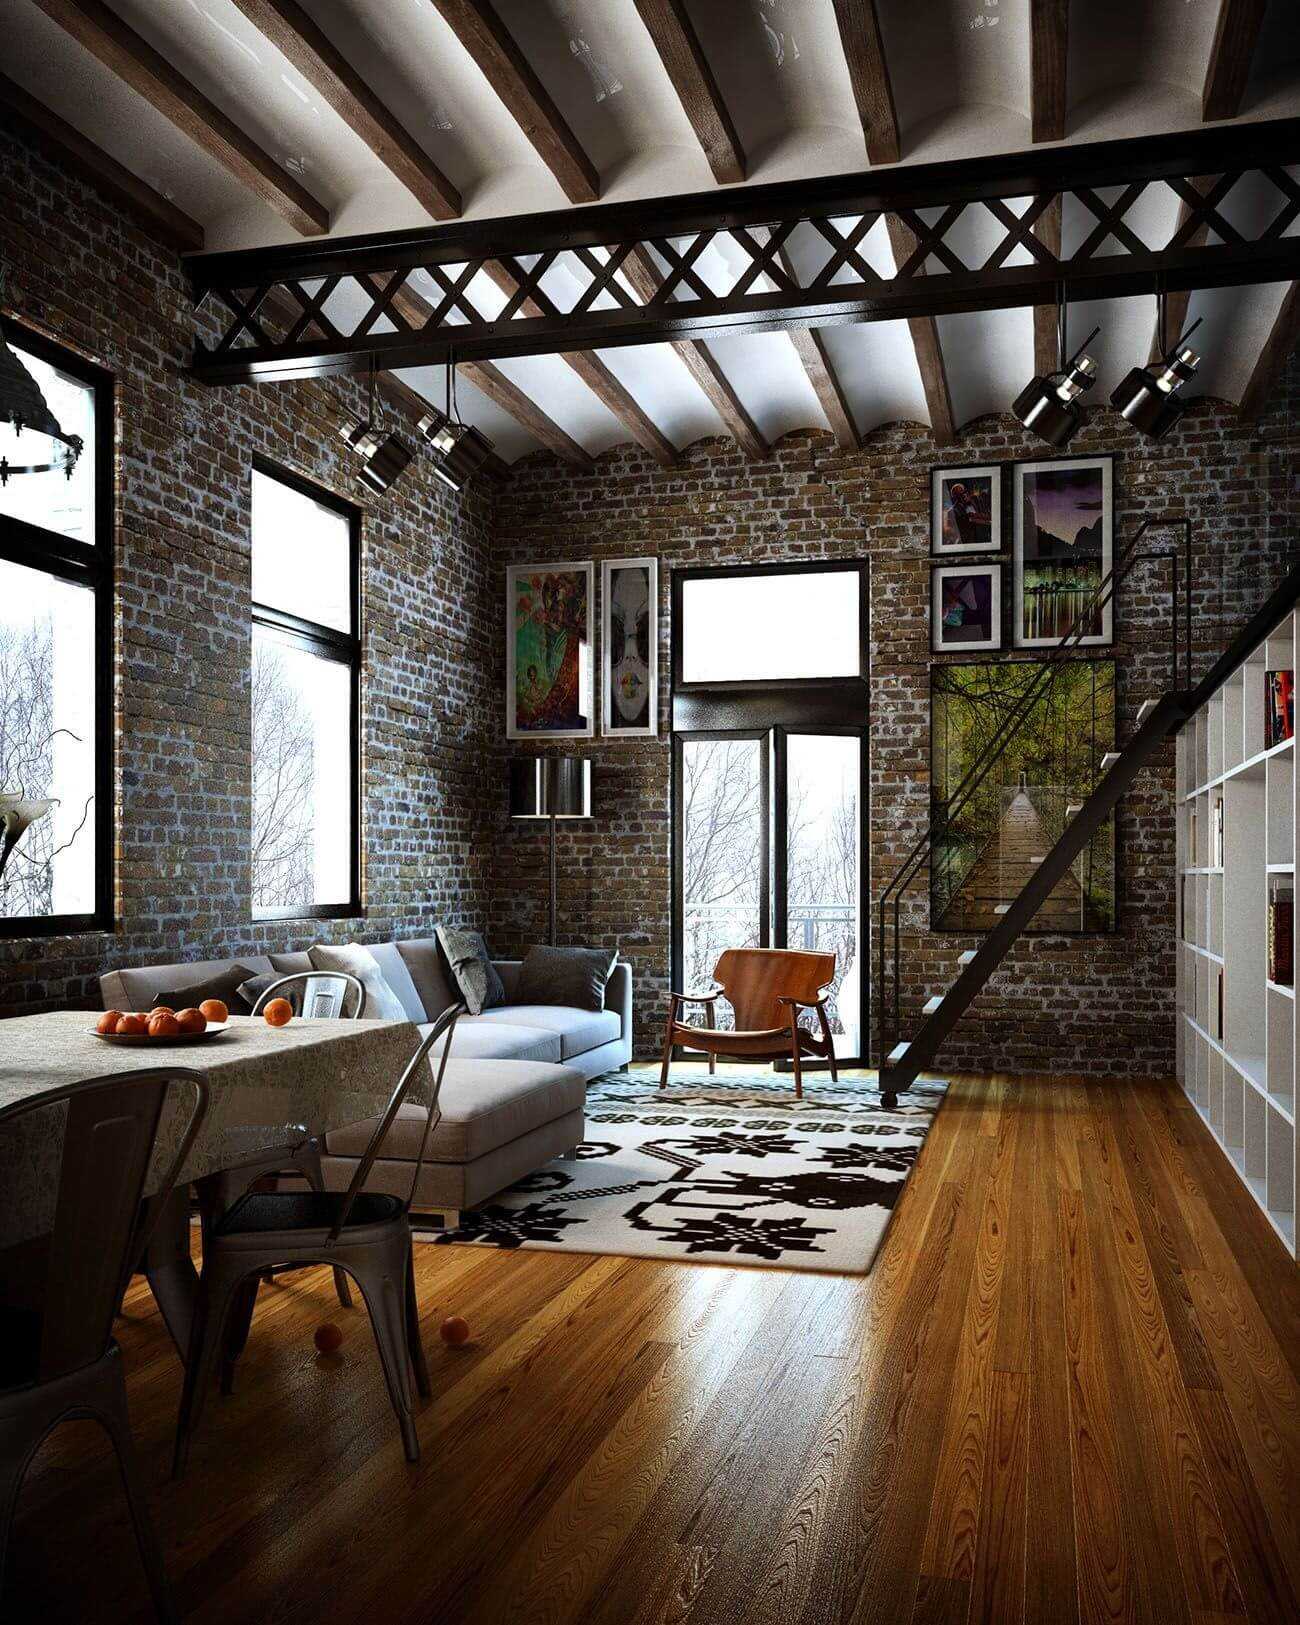 Дизайн квартиры в стиле лофт - 90 фото, красивые интерьеры, идеи ремонта и отделки комнат